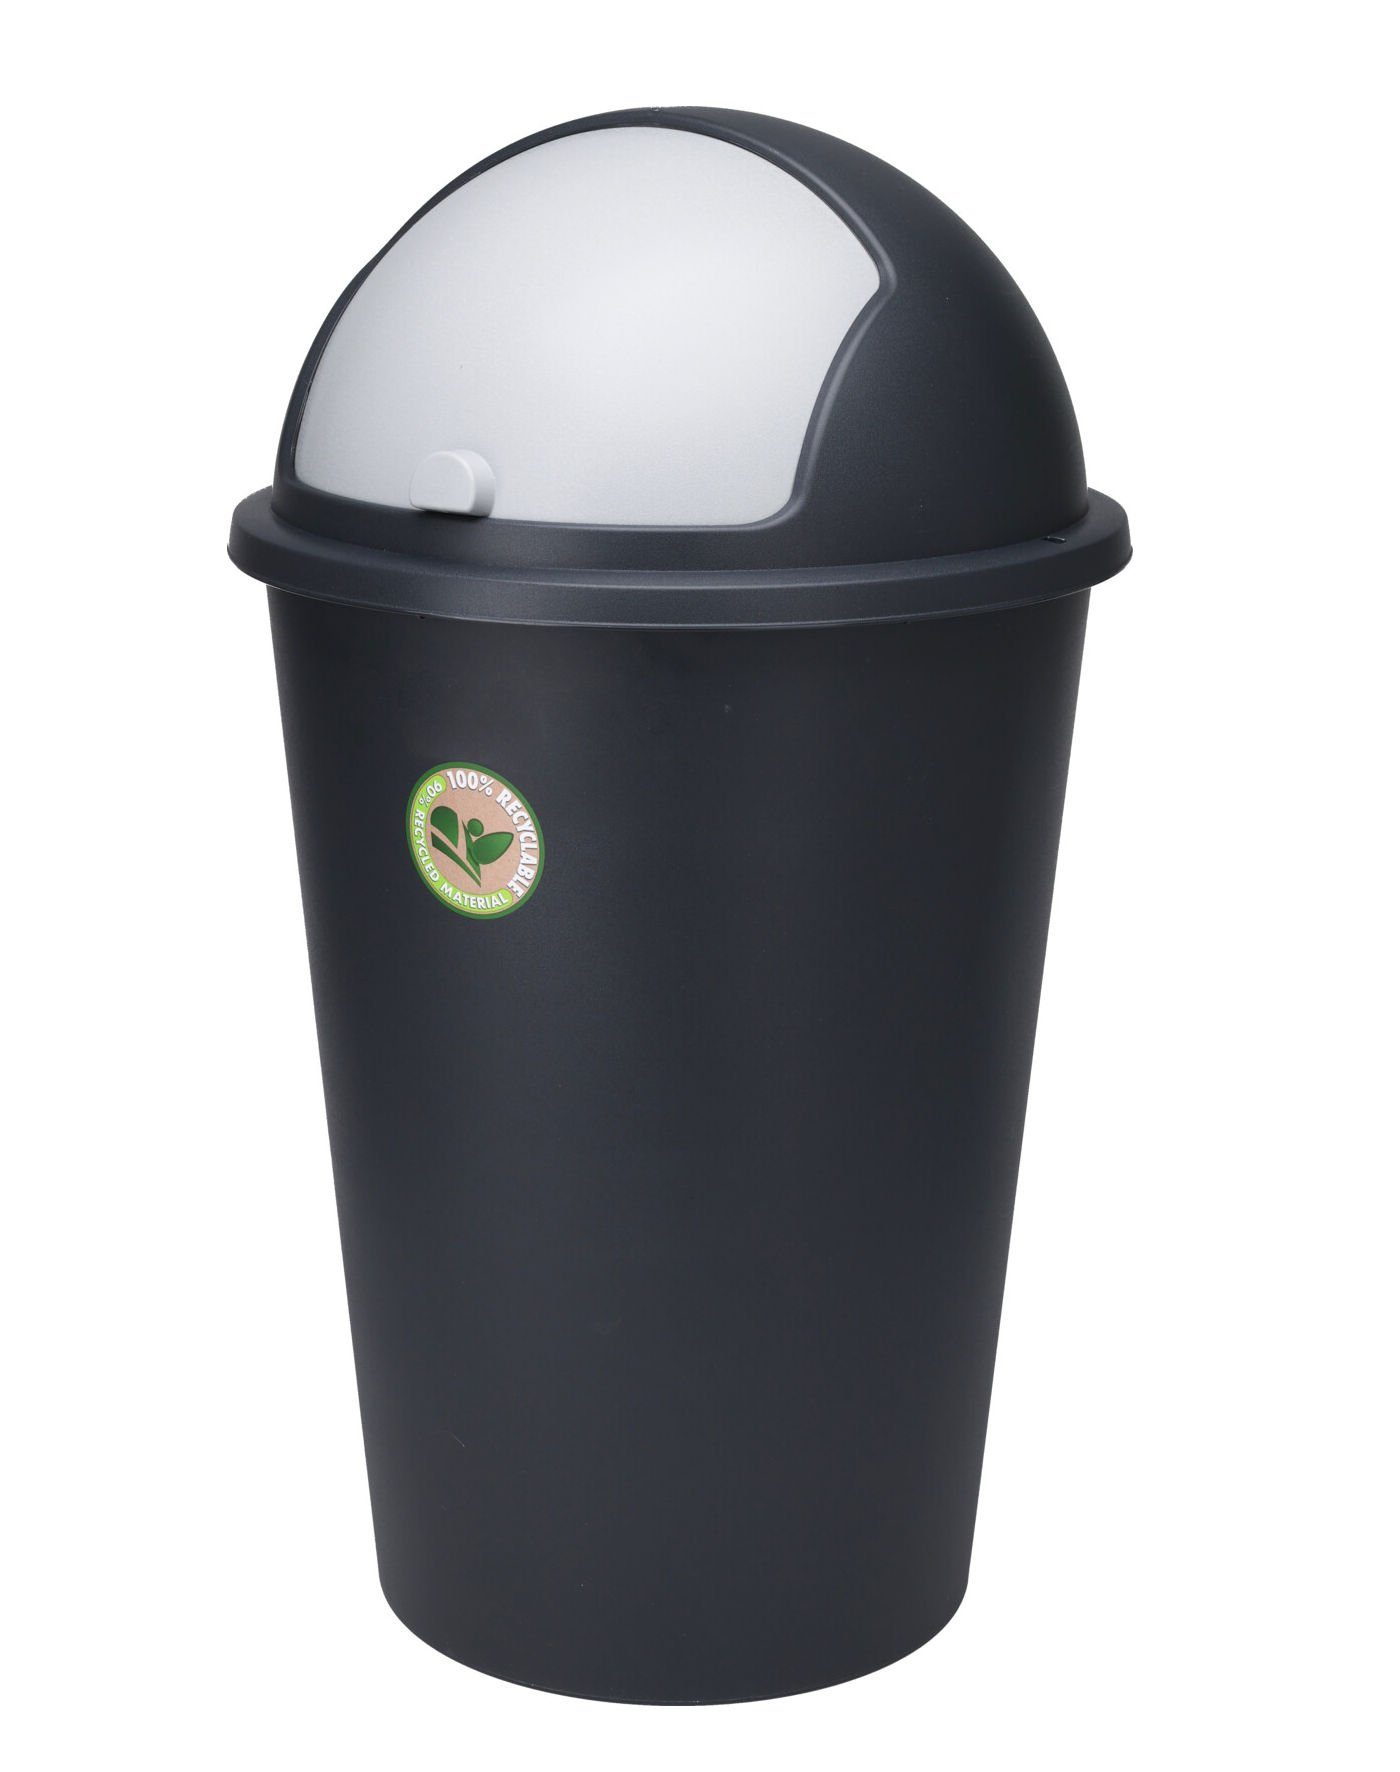 Spetebo Mülleimer Mülltonne mit Kuppel-Deckel schwarz - 50 L, Runder Mülleimer mit Schiebe-Deckel